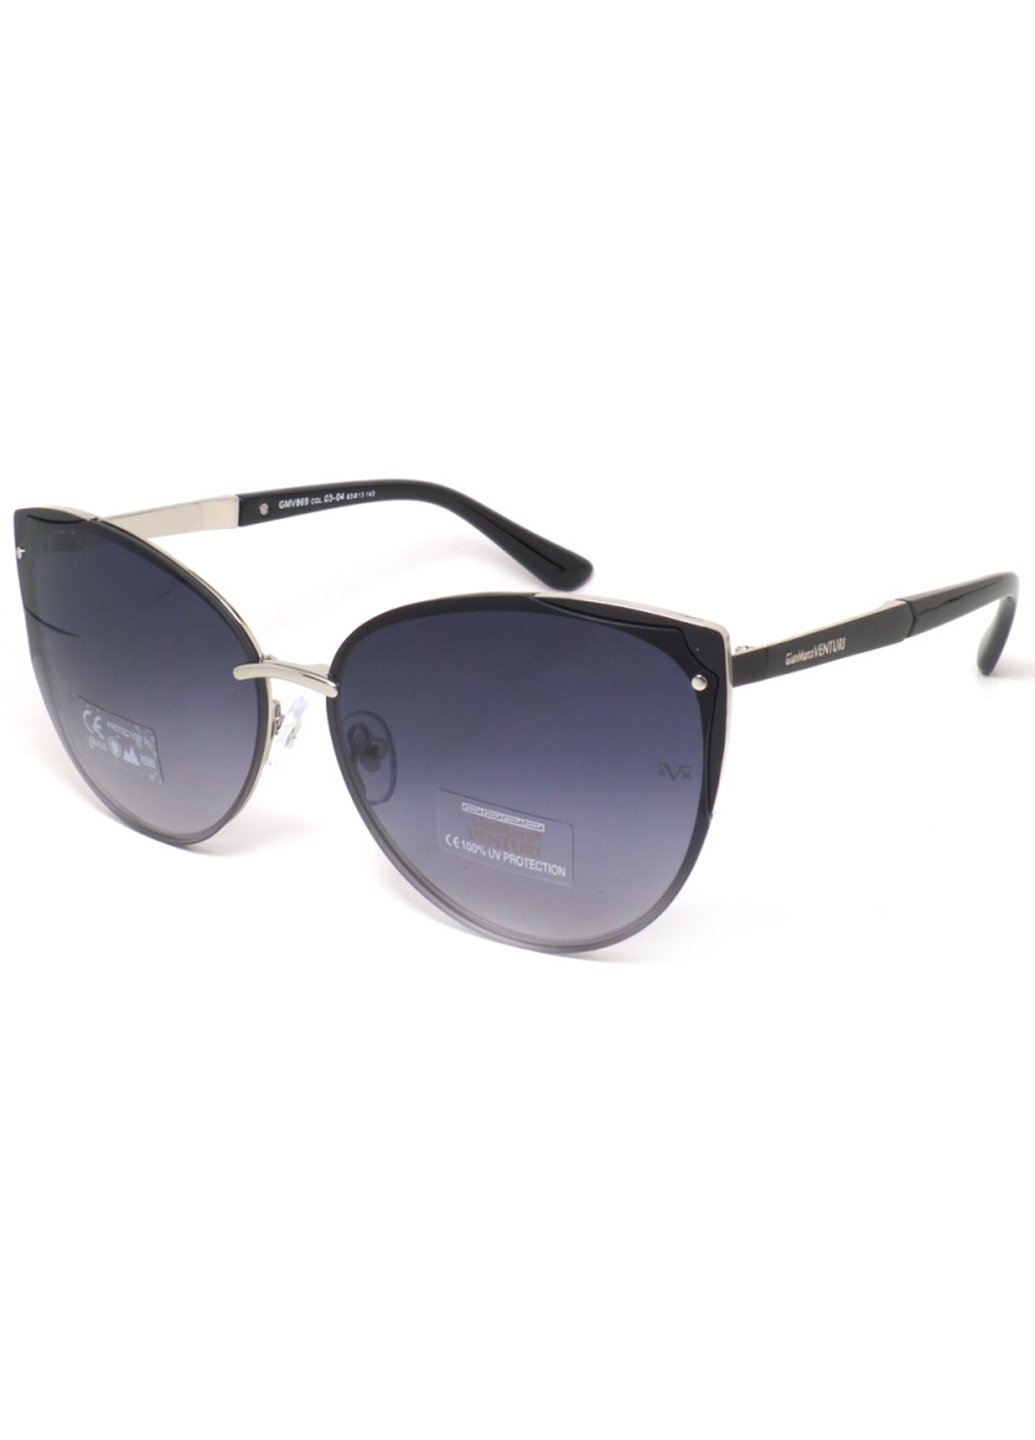 Купить Женские солнцезащитные очки Gian Marco VENTURI GMV869 130012 - Черный в интернет-магазине